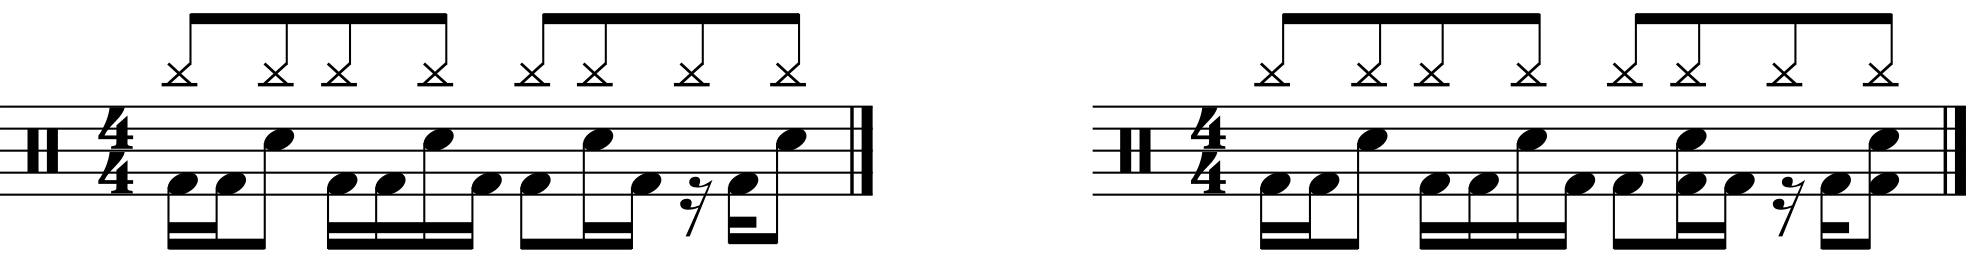 A double 43333 rhythmed groove